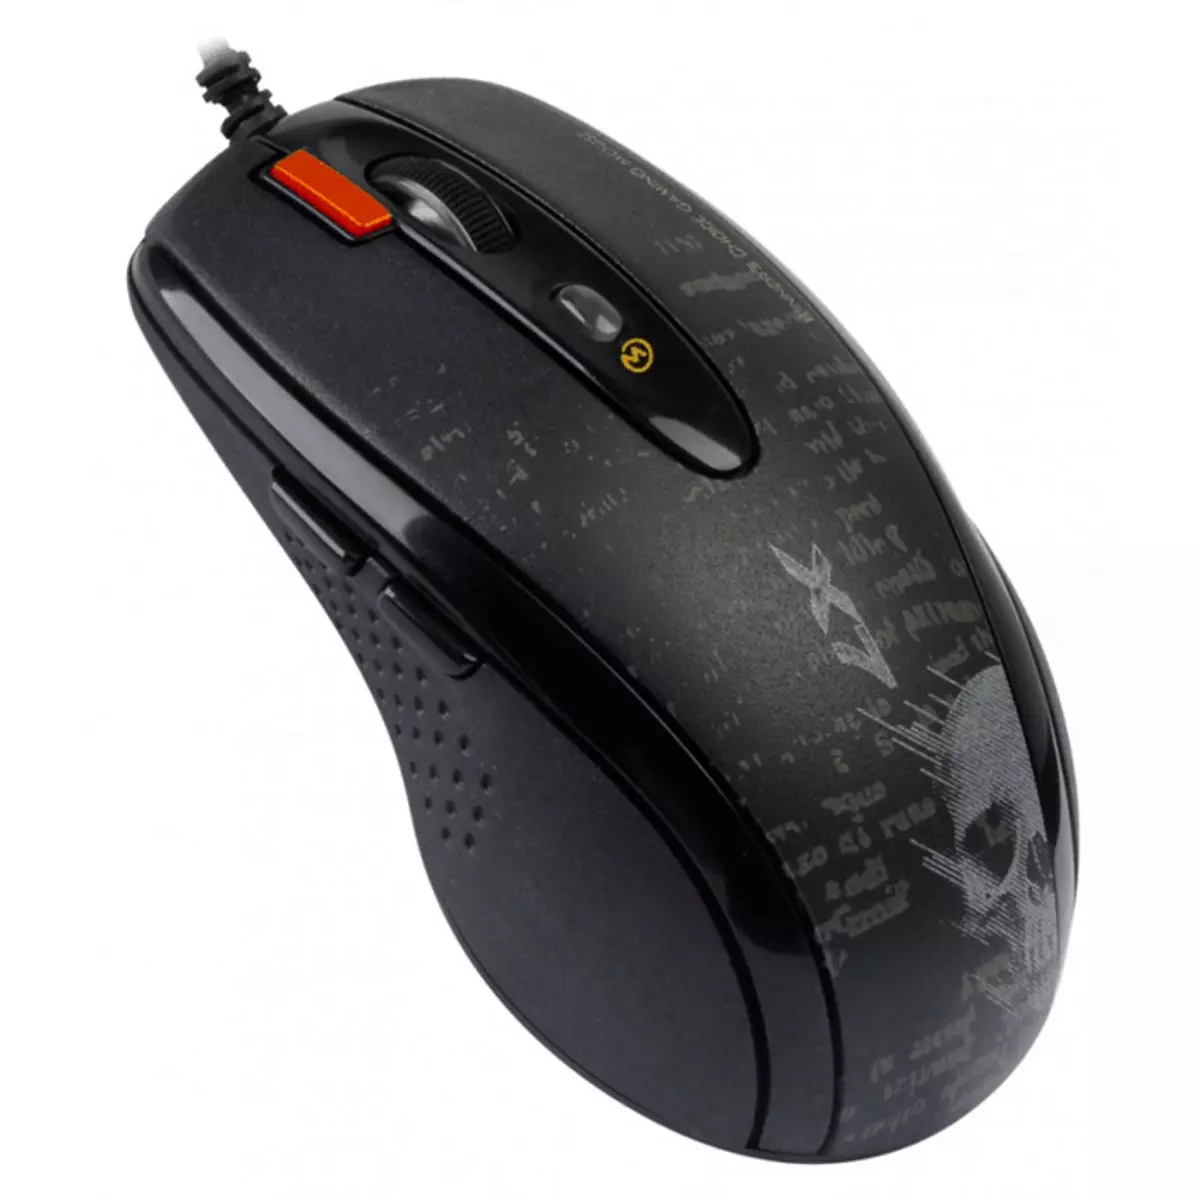 I-download ang mga driver para sa mouse A4Tech X7.